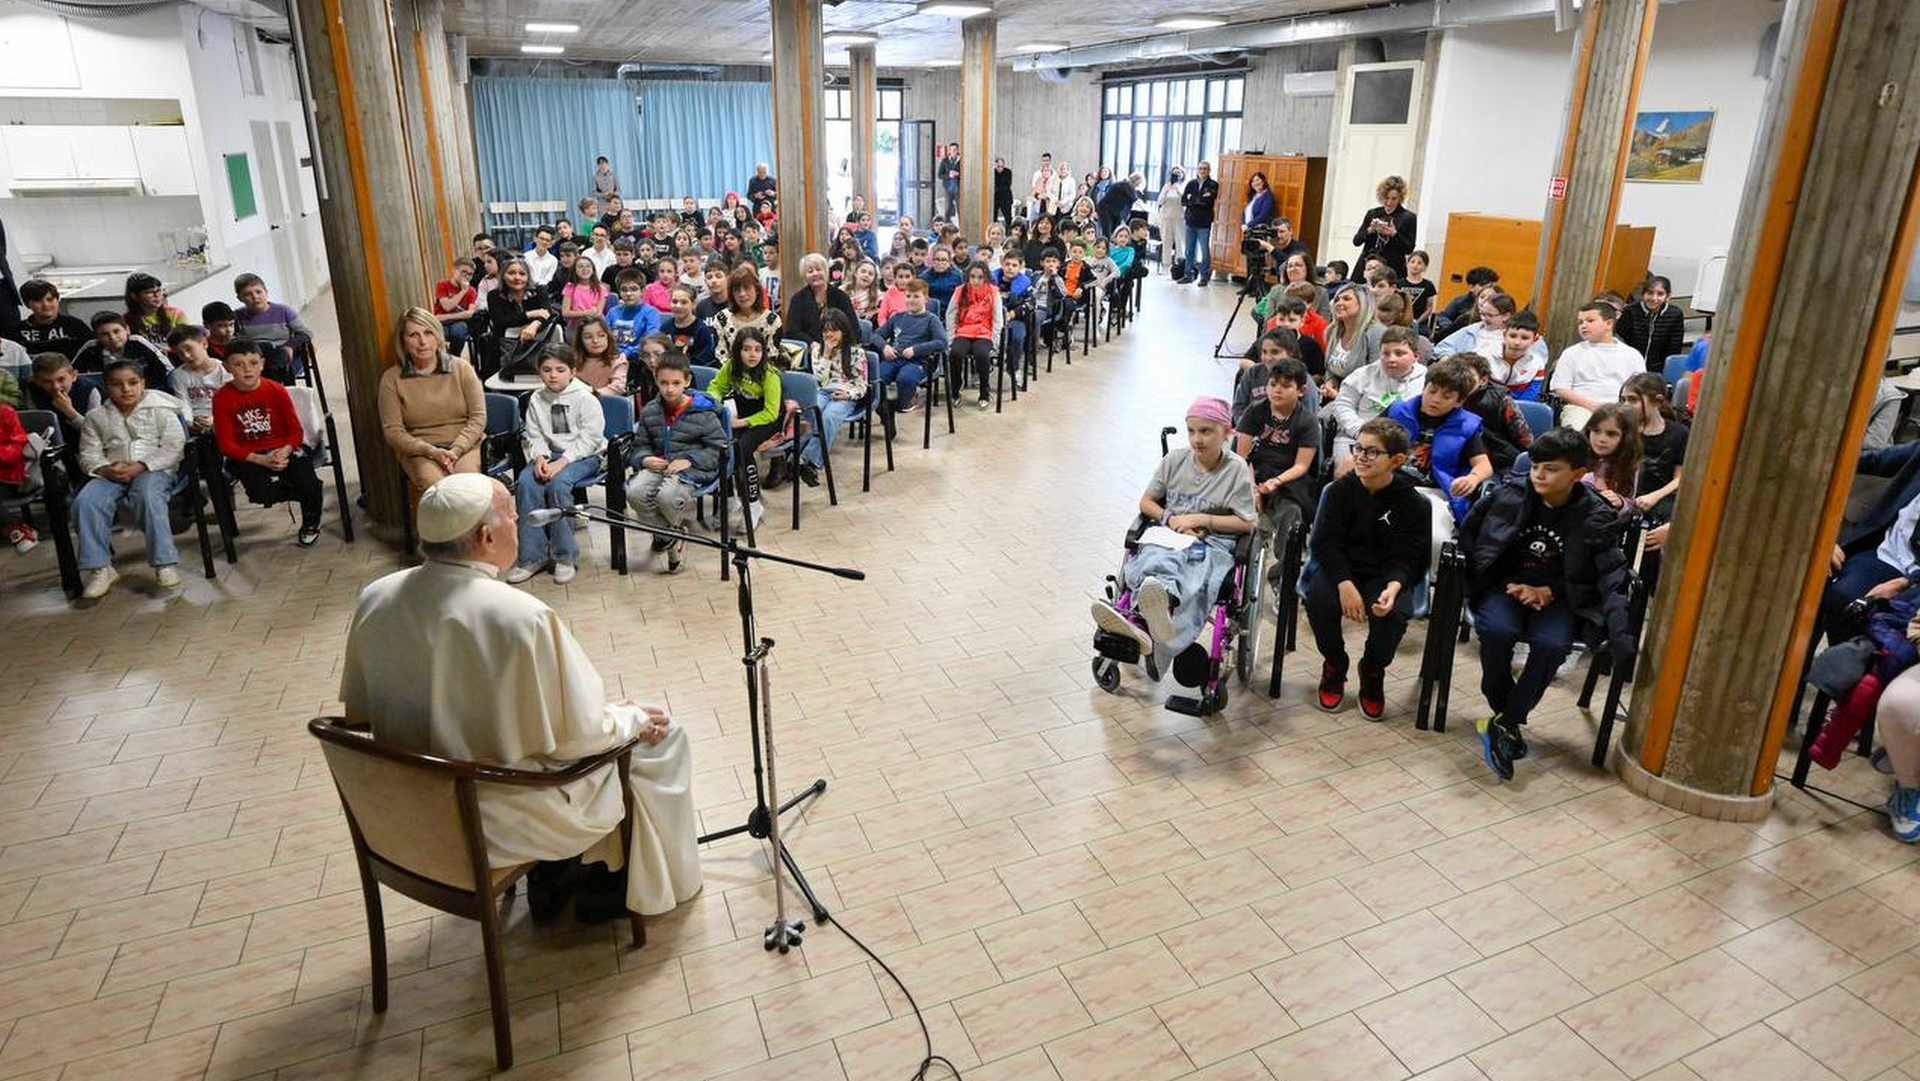 Le pape François a rencontré les enfants d'une paroisse romaine | ©Vatican Media